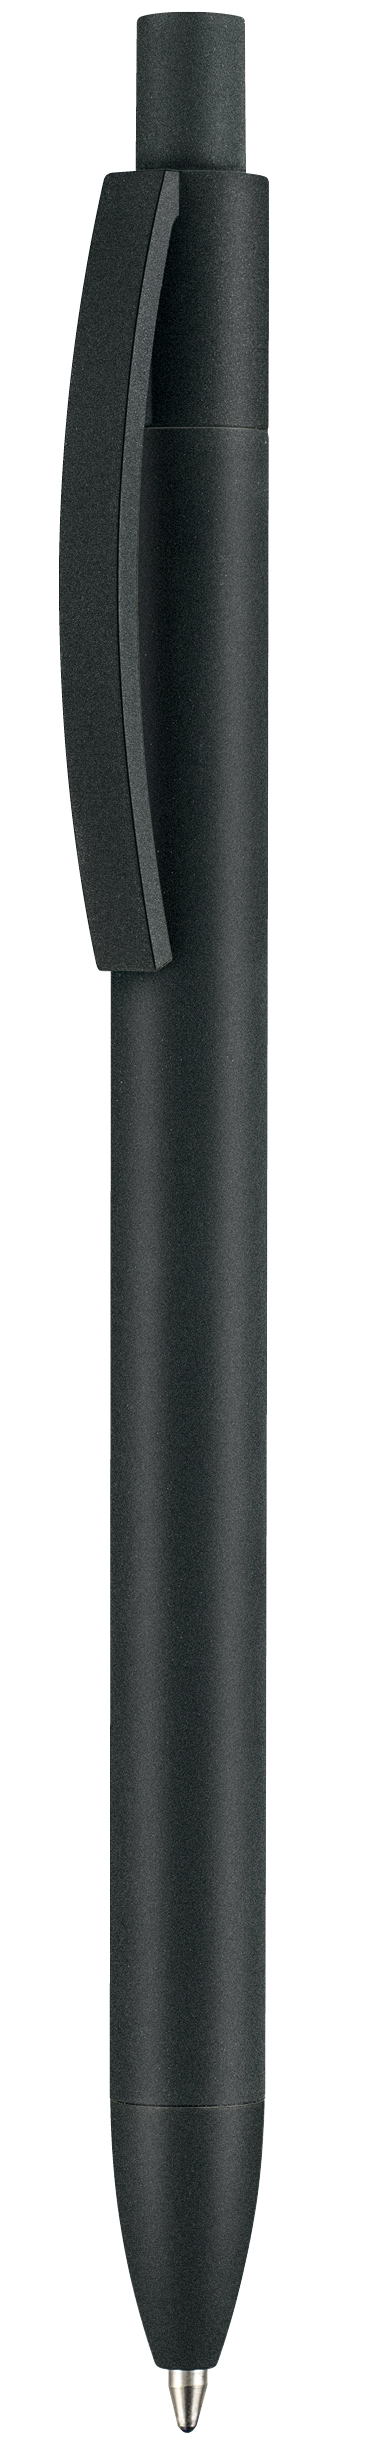 Soft Capri Black 69910 Kugelschreiber Ritter-Pen | GmbH